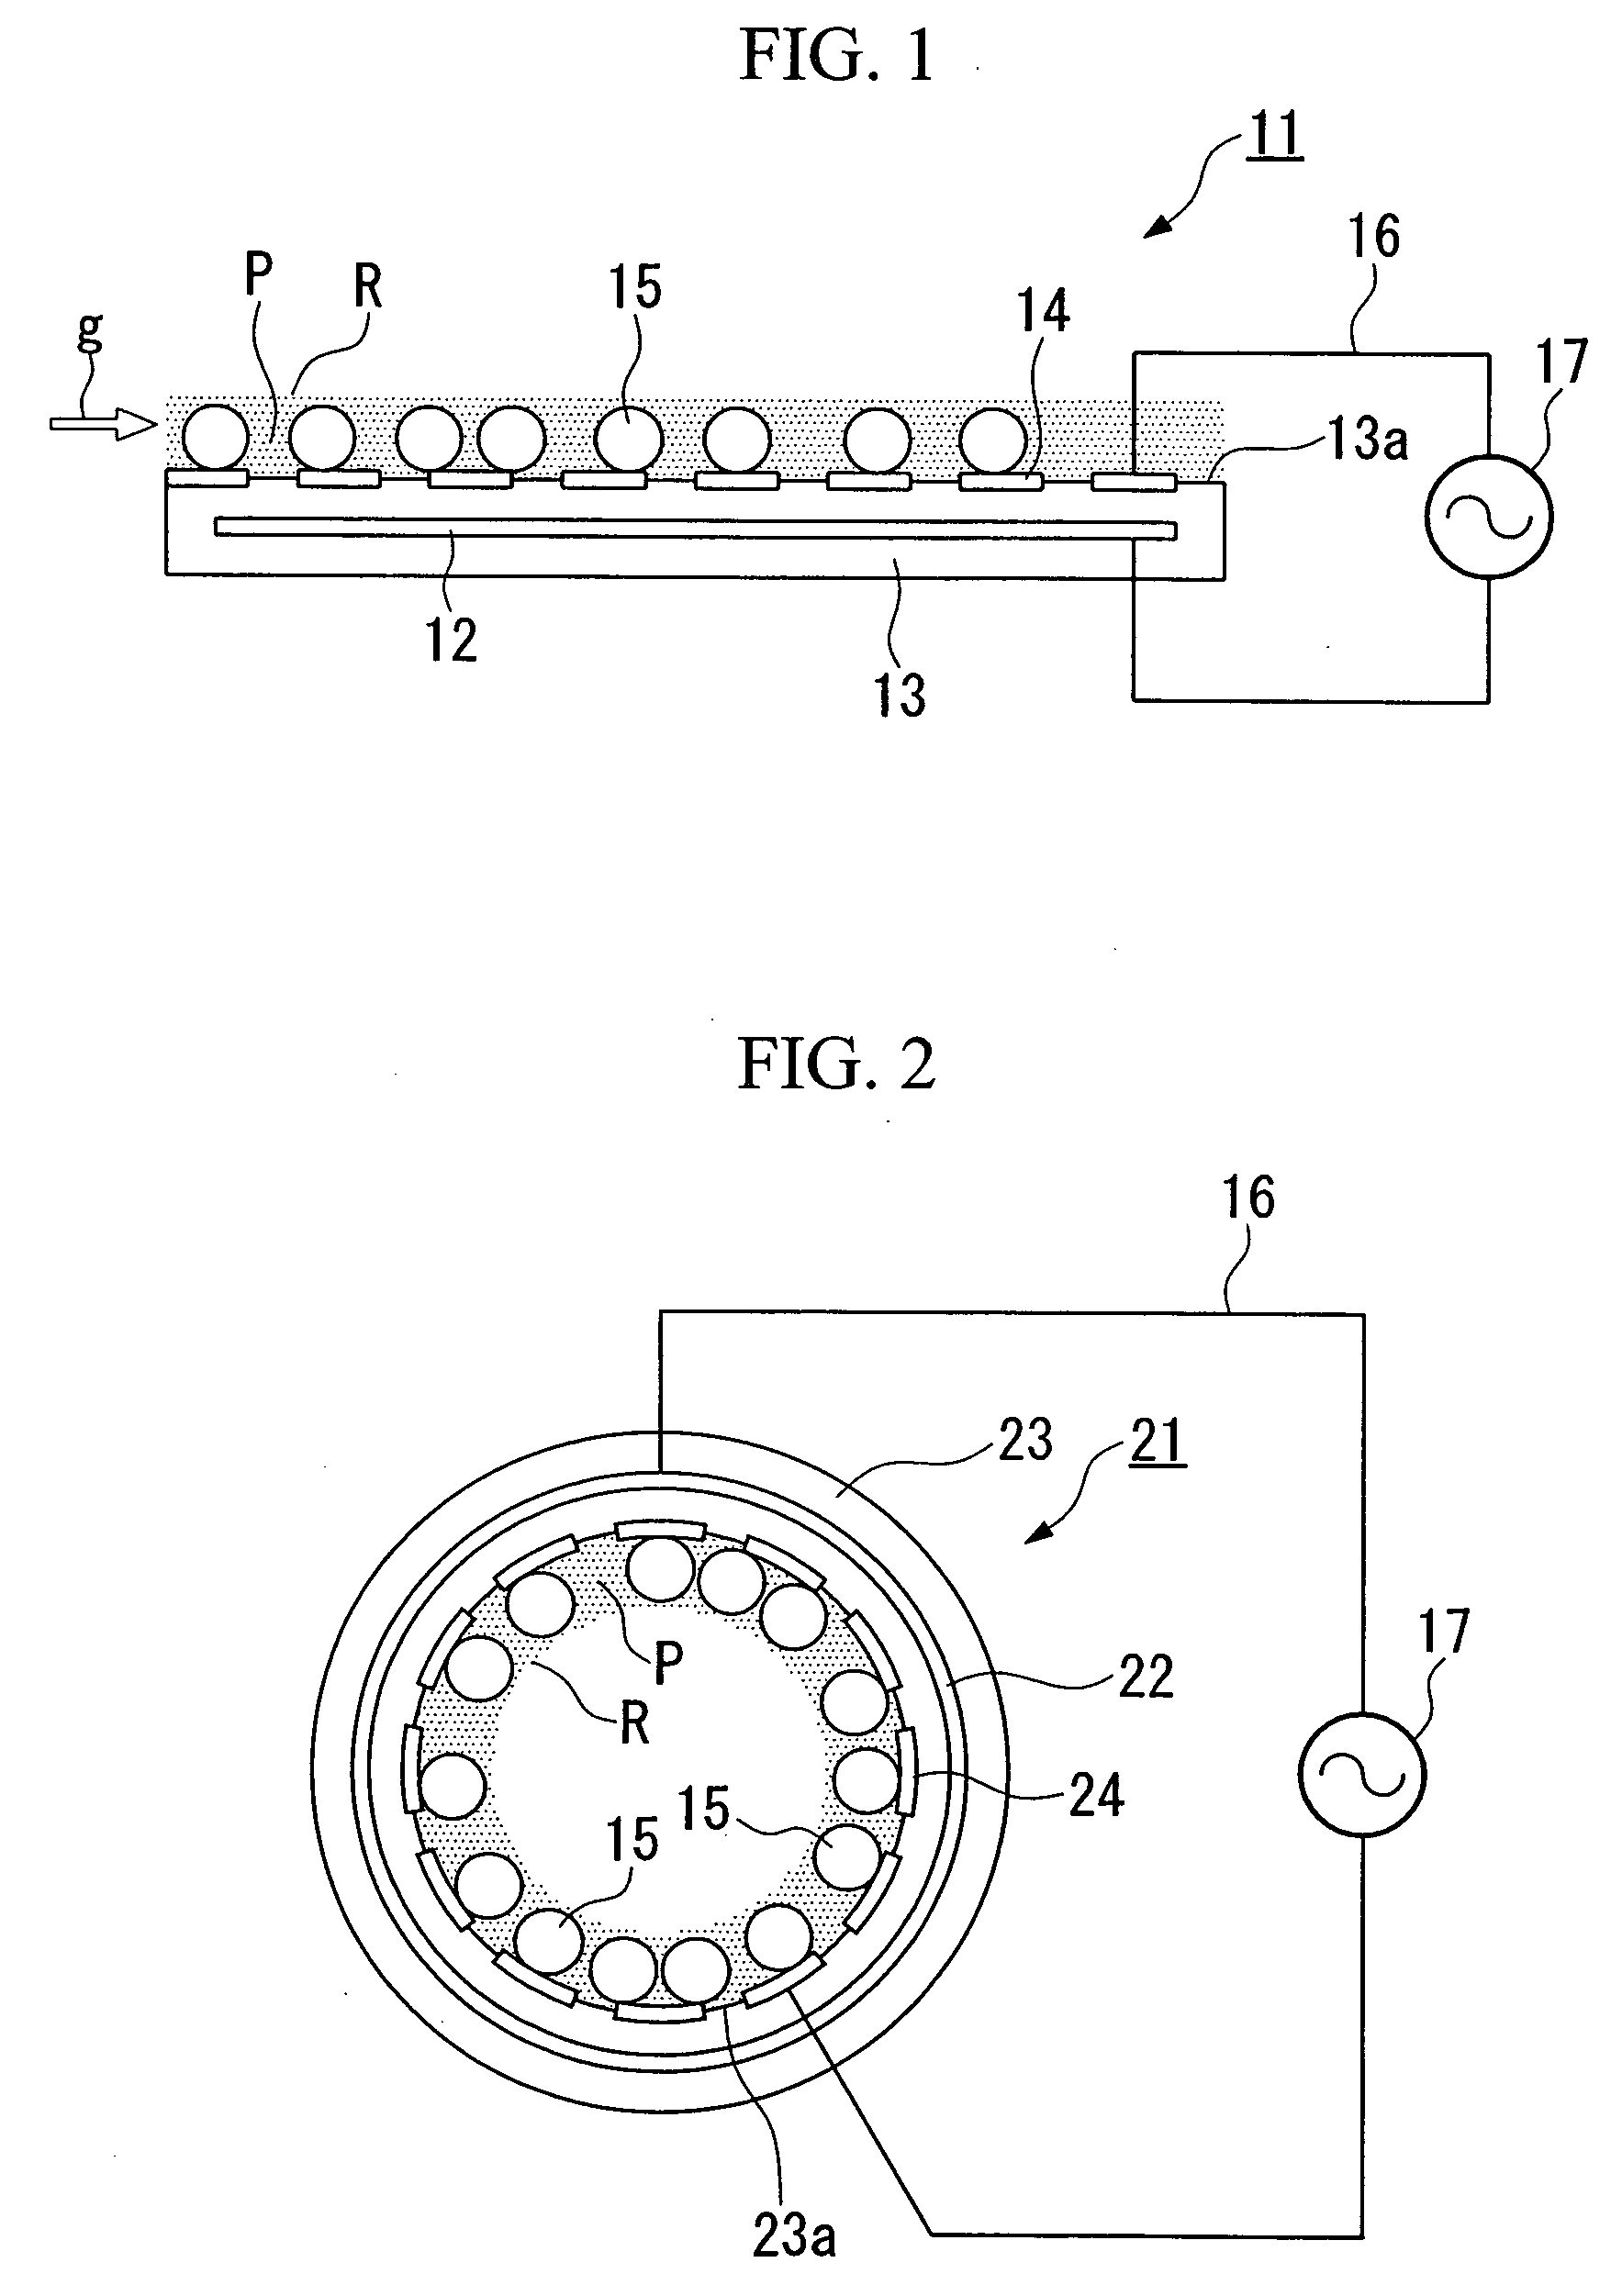 Method and apparatus for gas treatment using non-equilibrium plasma